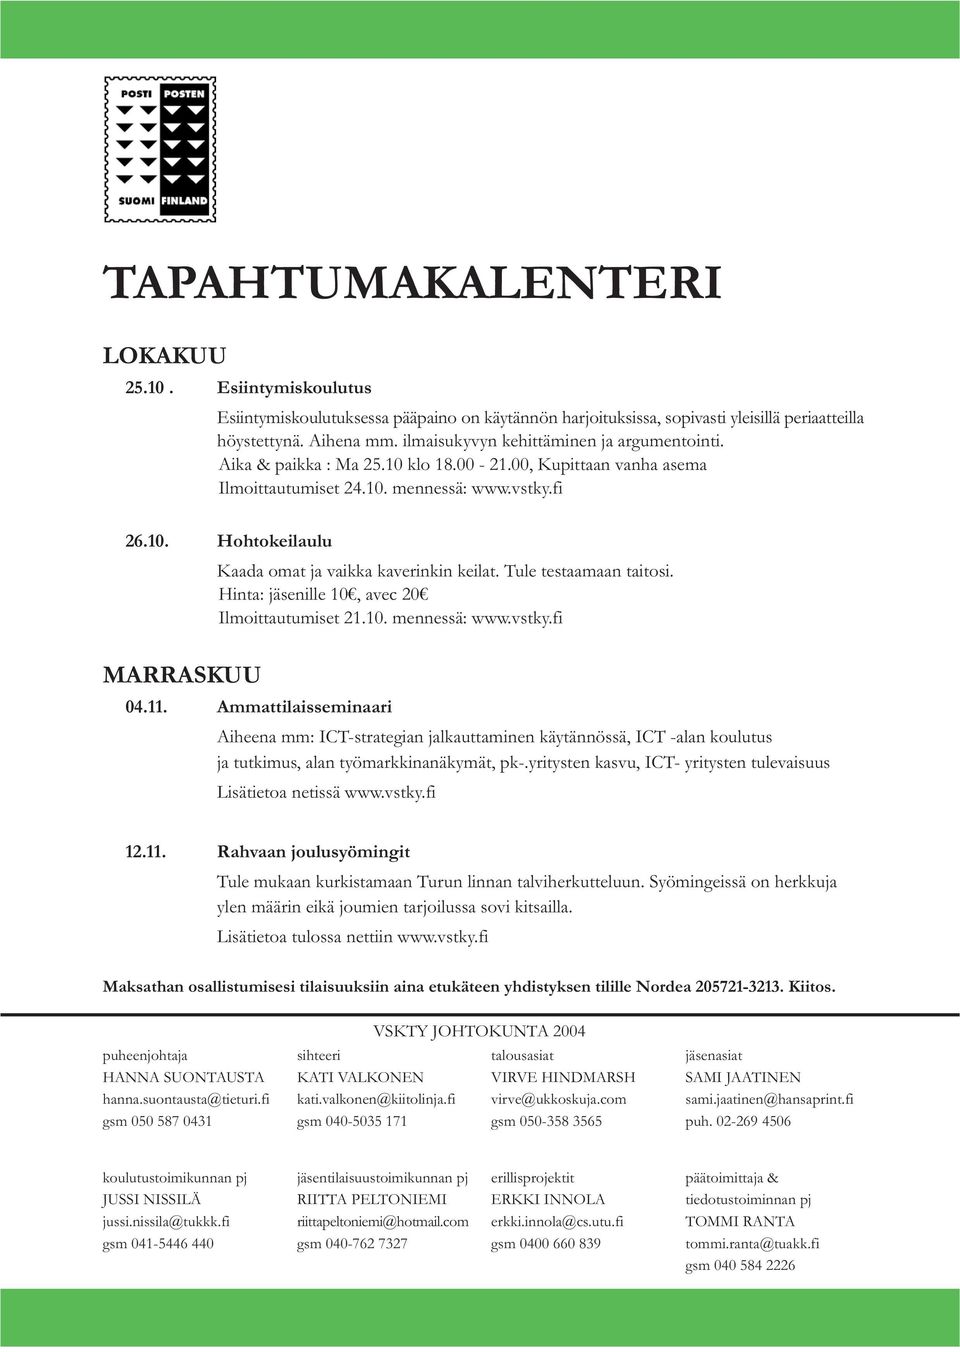 Tule testaamaan taitosi. Hinta: jäsenille 10, avec 20 Ilmoittautumiset 21.10. mennessä: www.vstky.fi MARRASKUU 04.11.